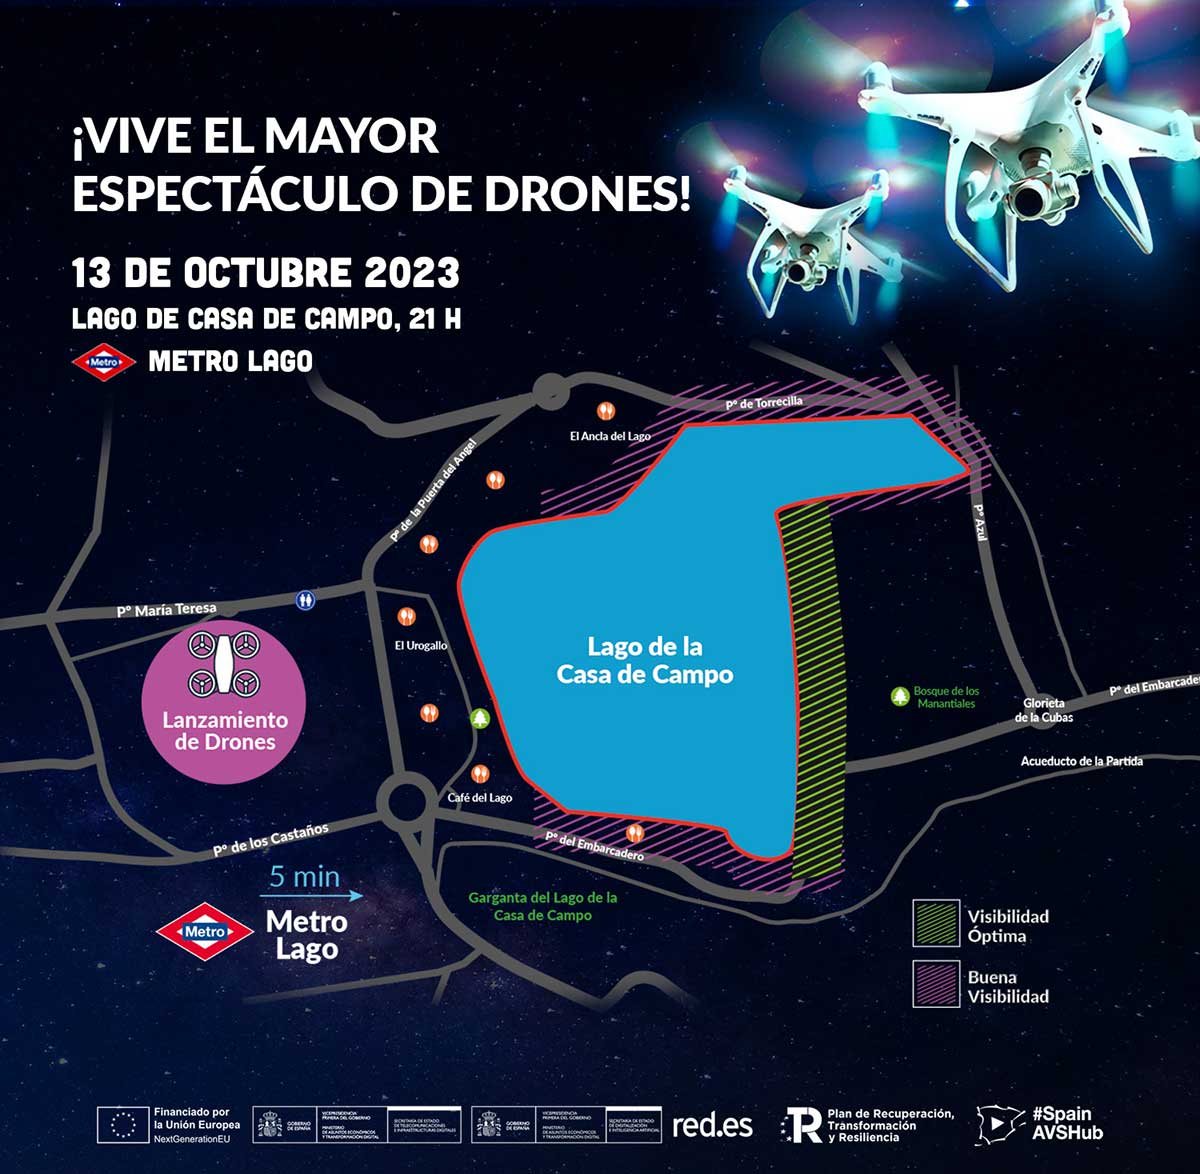 Mapa del espectáculo de drones en el lago de la Casa de Campo de Madrid.